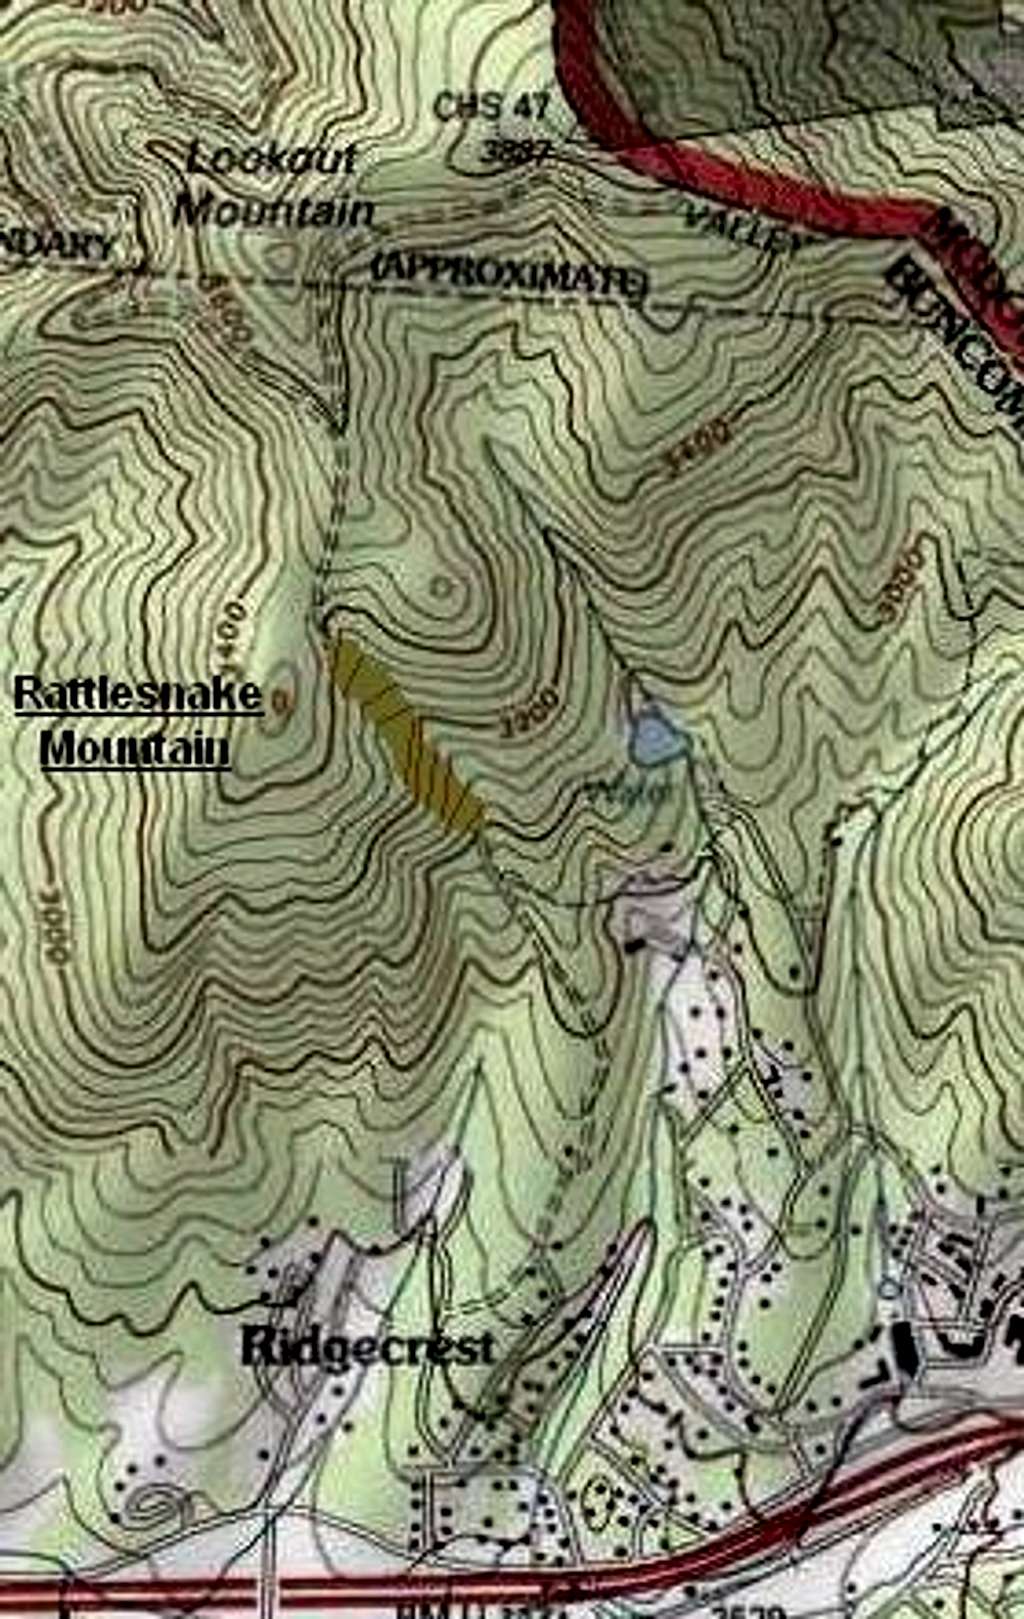 Rattlesnake Mountain Location